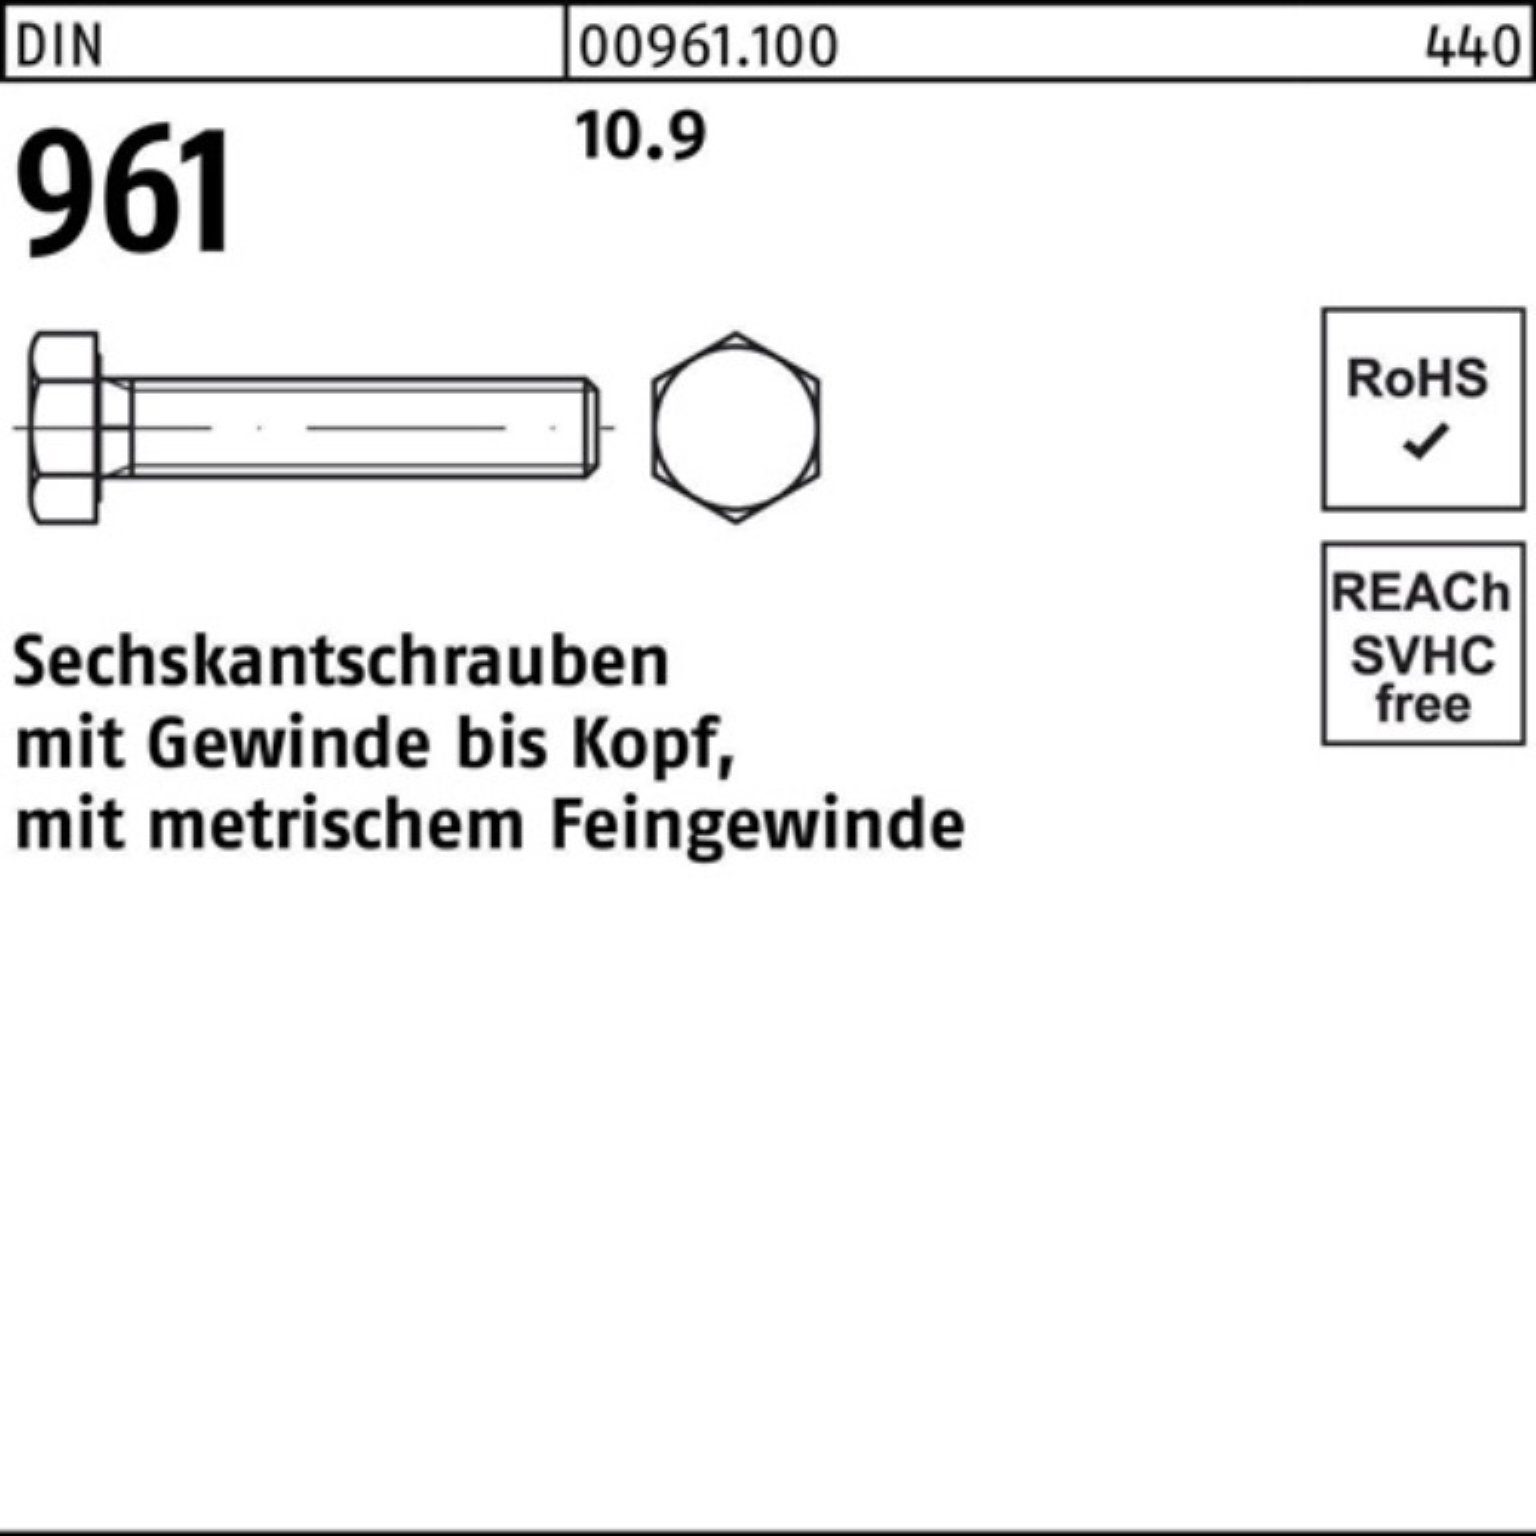 Reyher Sechskantschraube 100er DIN M10x1,25x Sechskantschraube VG Pack 961 Stück D 10.9 100 40